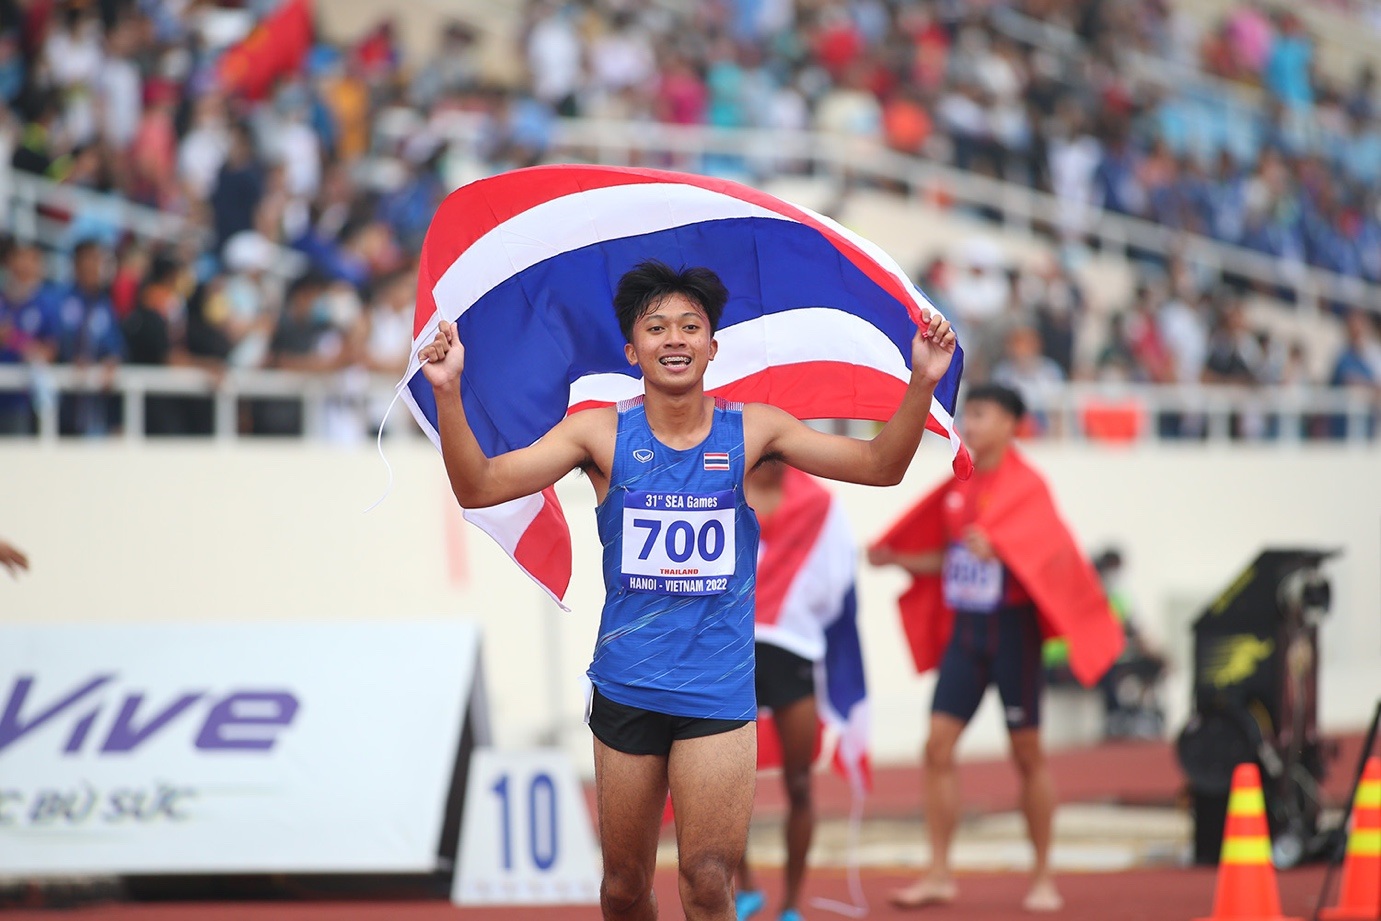 Thần đồng 16 tuổi Thái Lan phá 2 kỷ lục SEA Games trong một ngày - 1